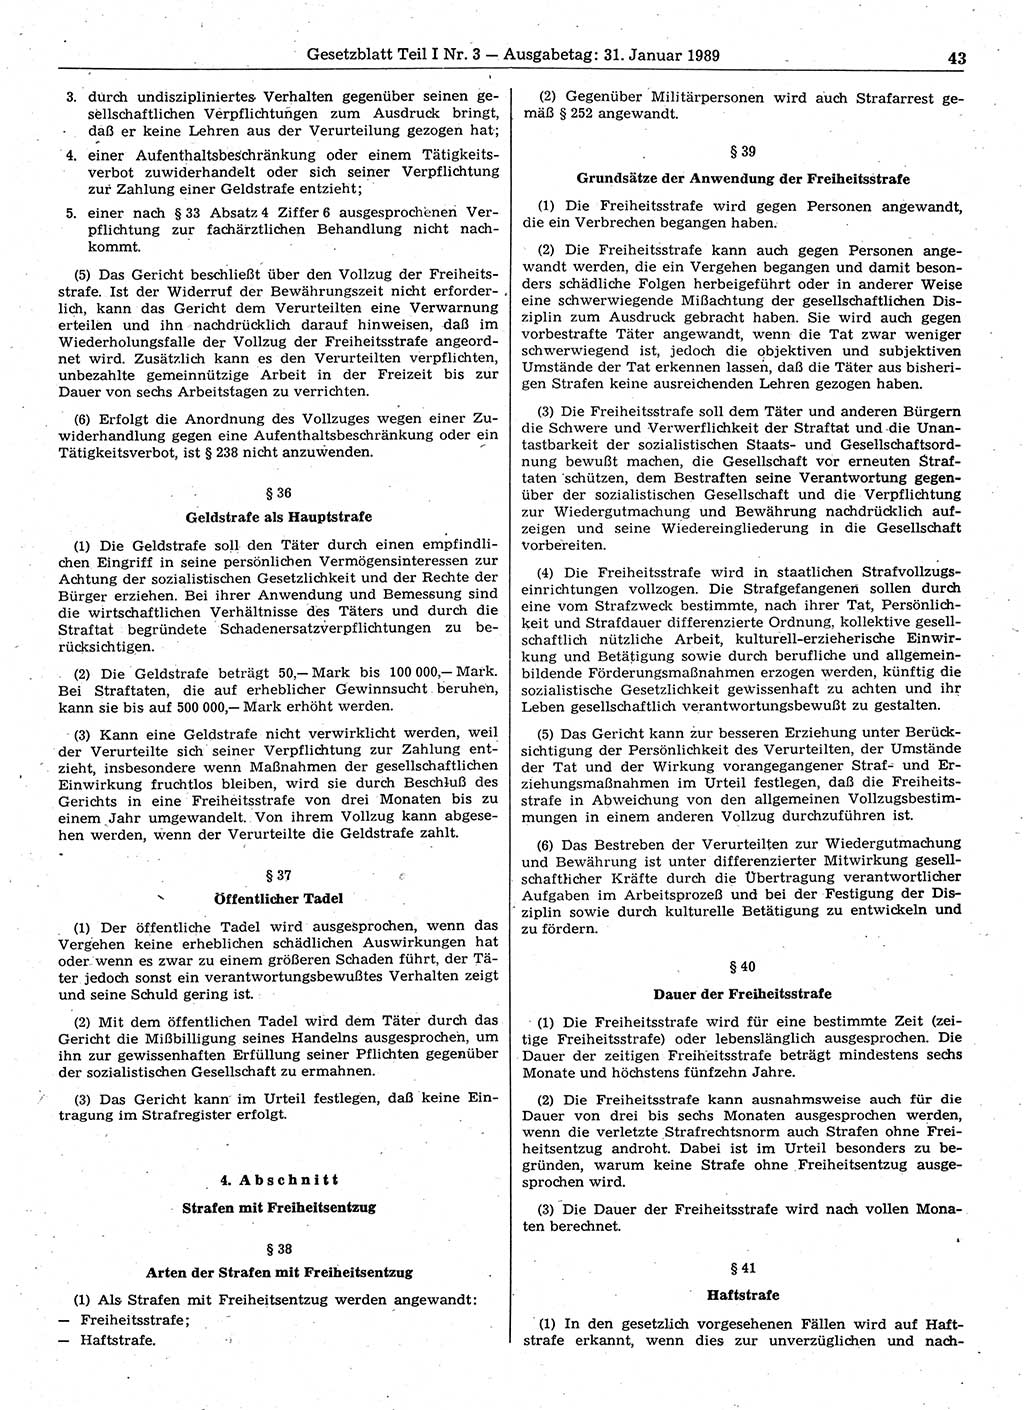 Gesetzblatt (GBl.) der Deutschen Demokratischen Republik (DDR) Teil Ⅰ 1989, Seite 43 (GBl. DDR Ⅰ 1989, S. 43)